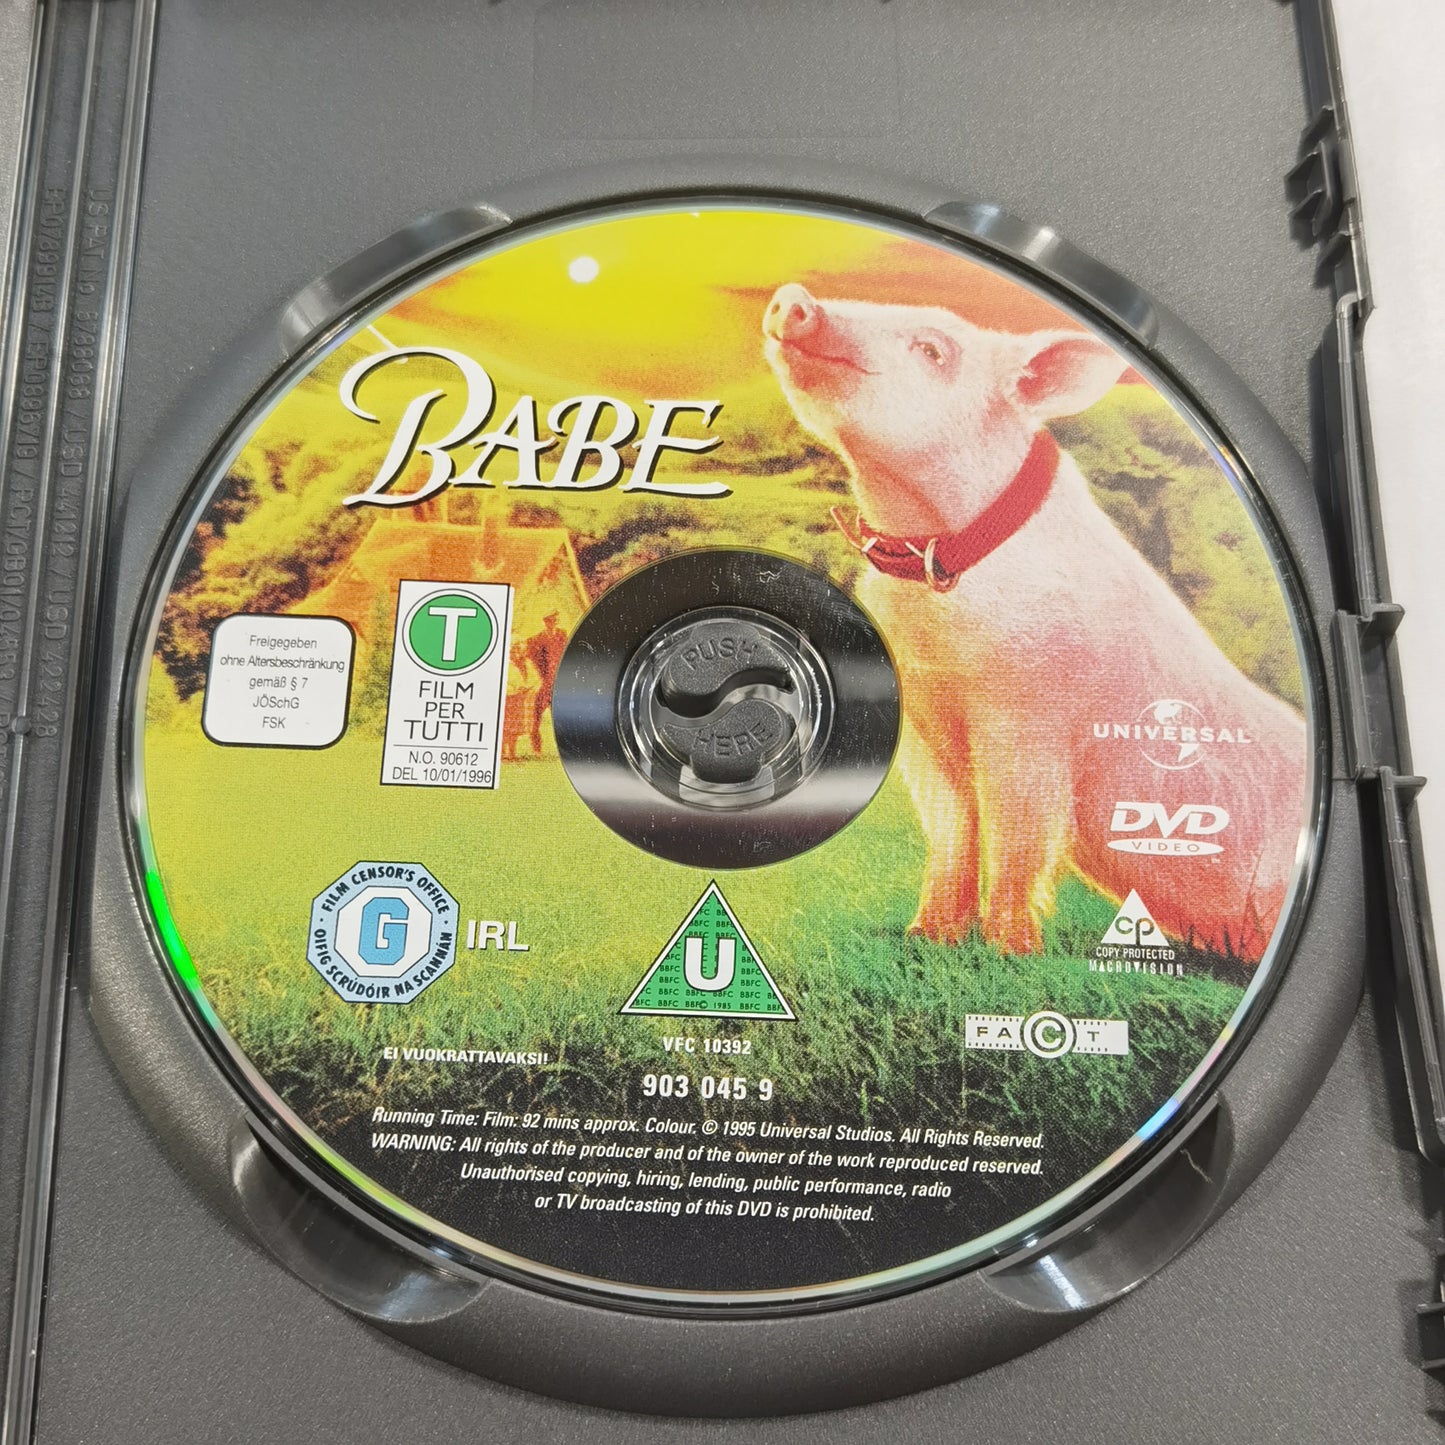 Babe (1995) - DVD SE 2004